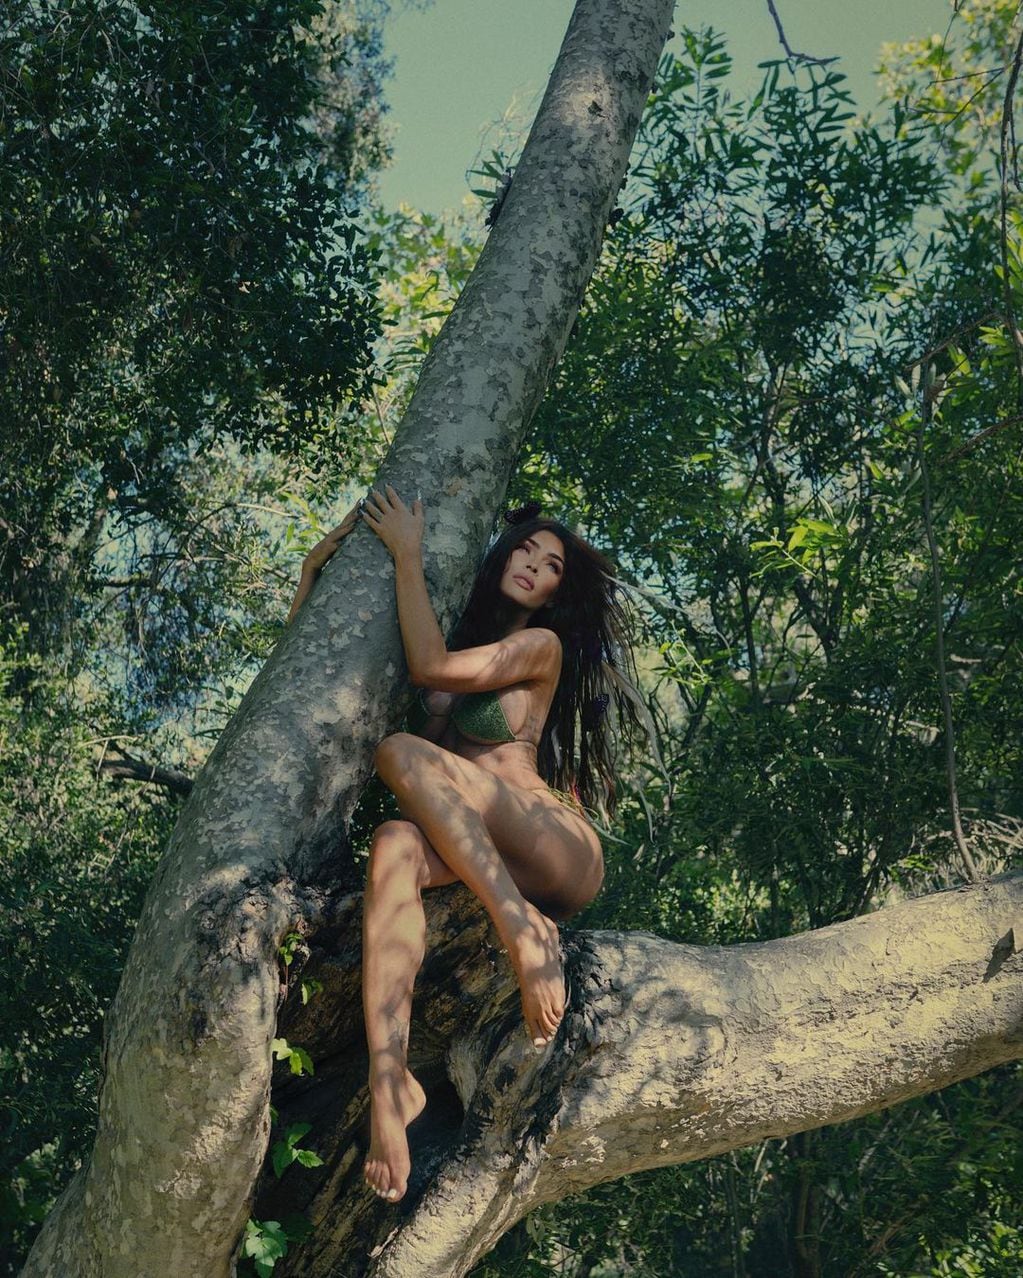 Megan Fox protagonizó ardientes fotos a lo Eva